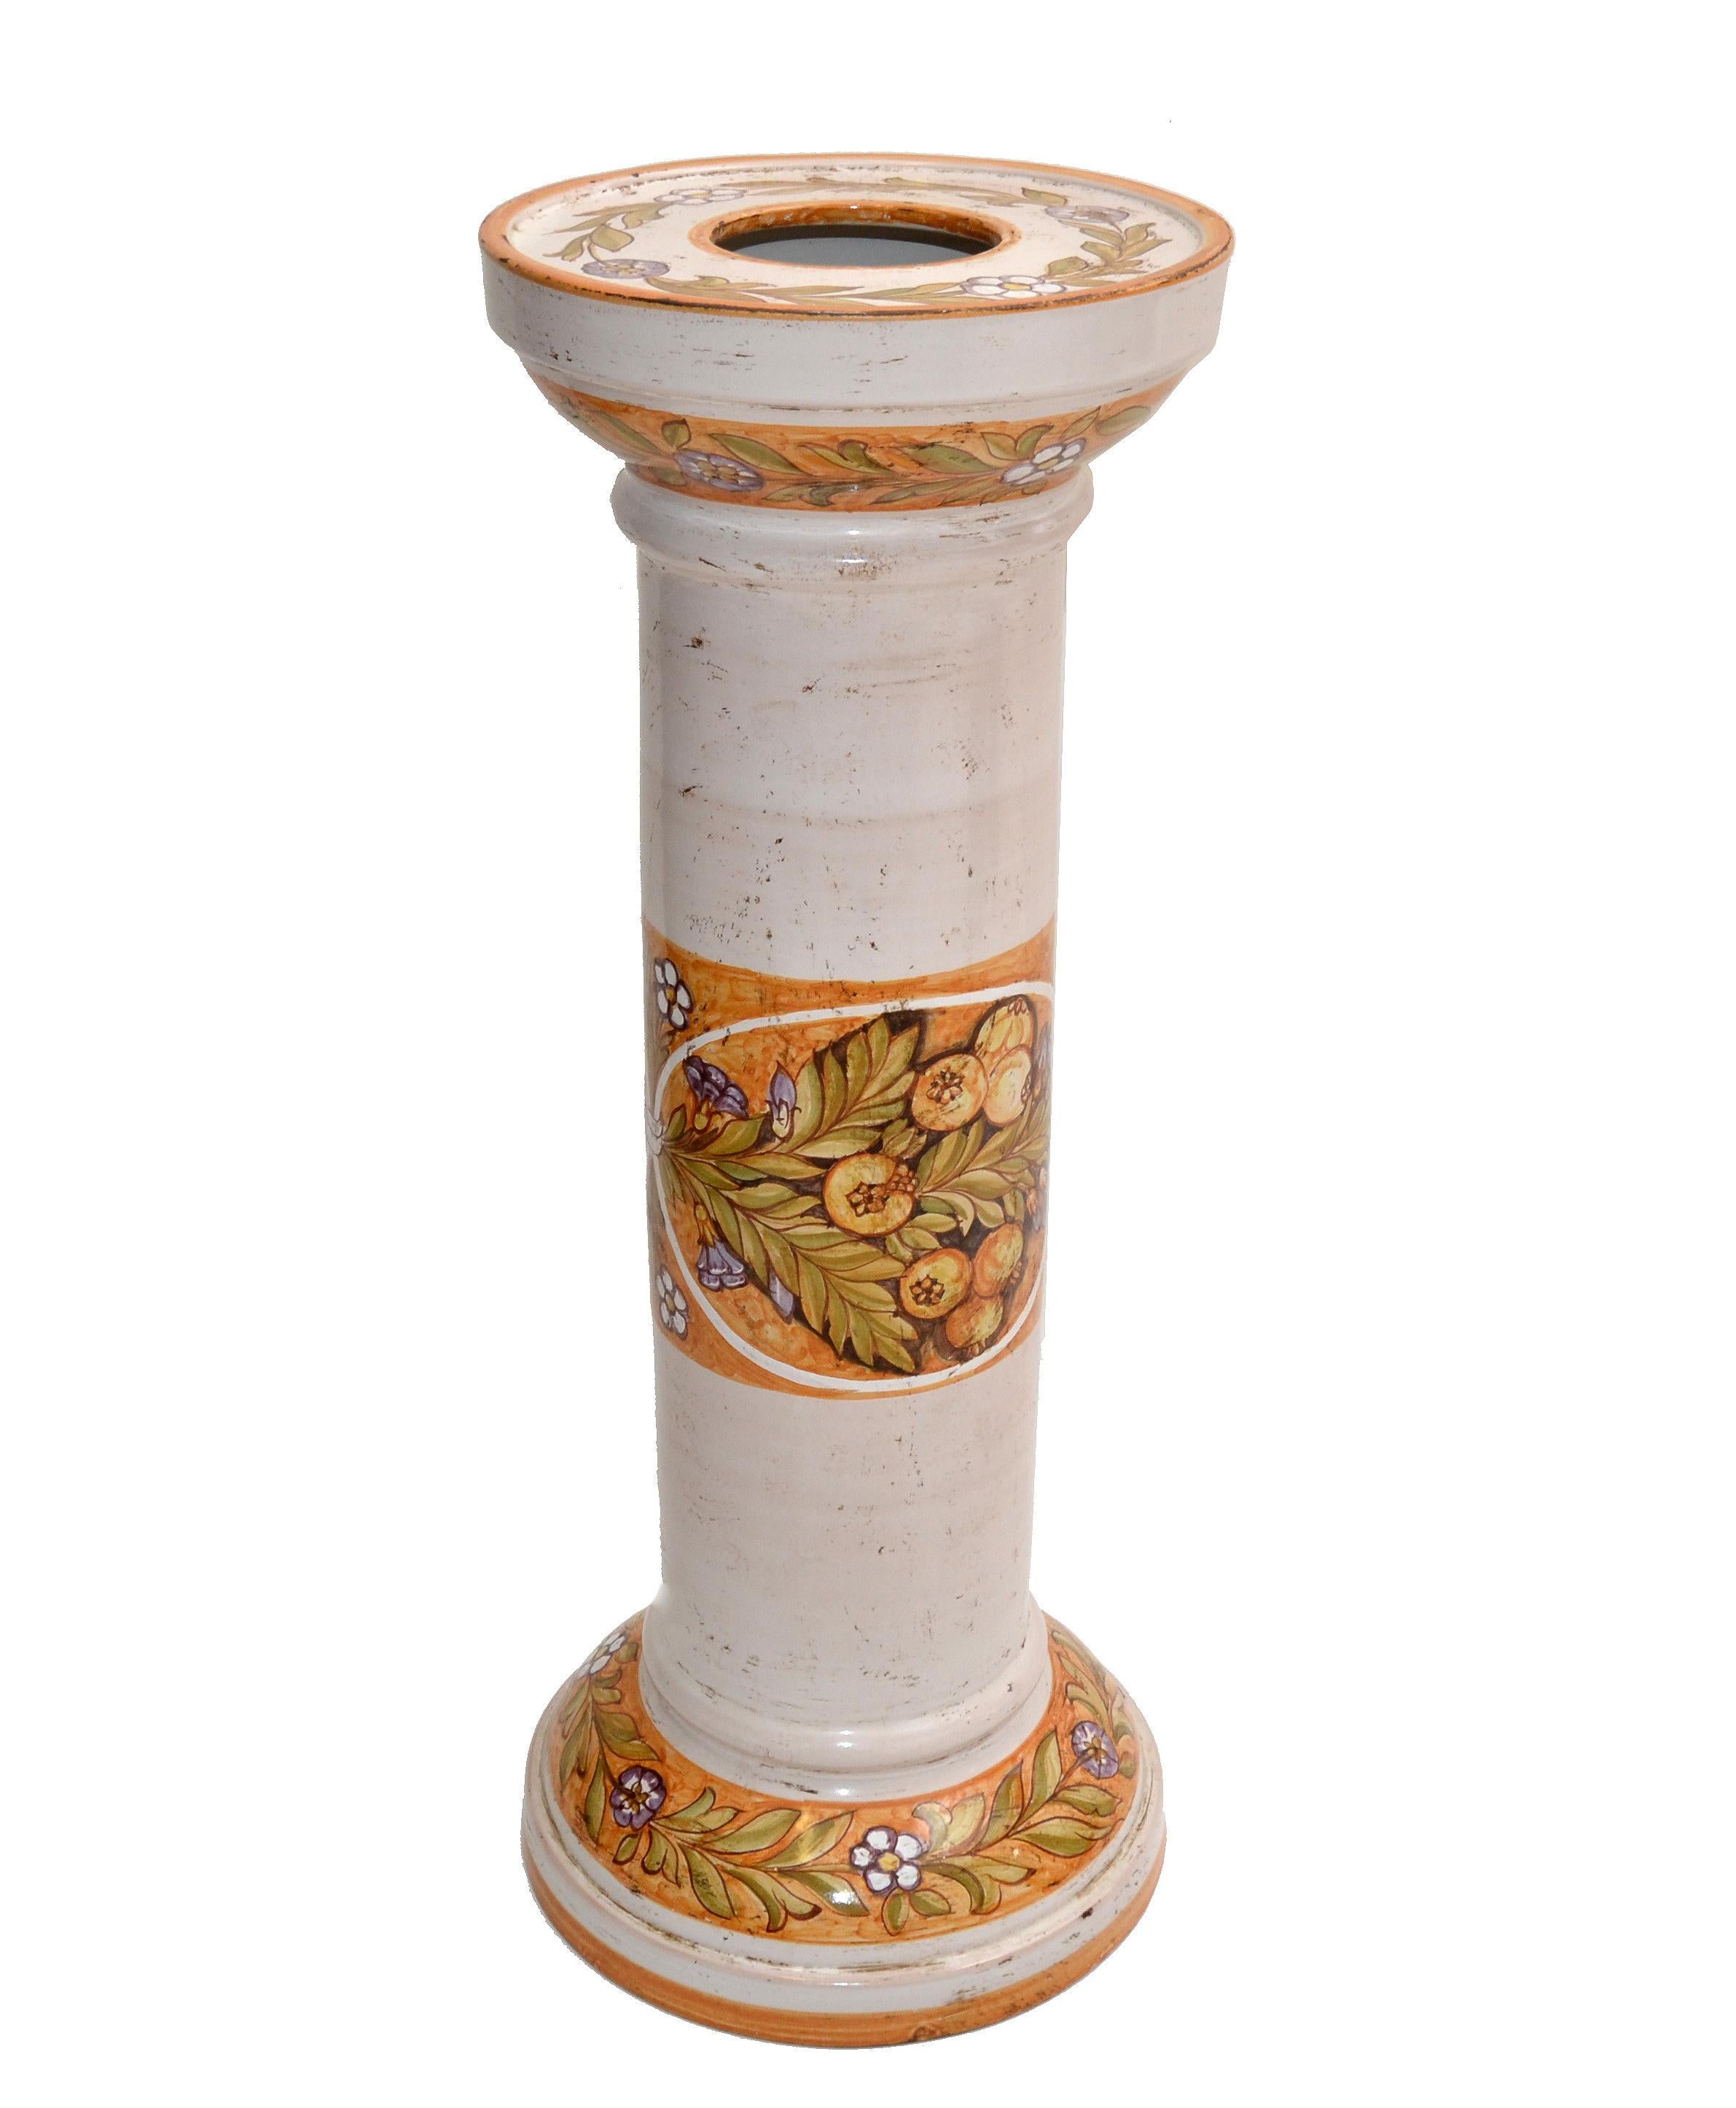 Italienische handgefertigte und handbemalte Deruta Keramik Bodenvase, Sockel mit einem beige, gelben Blumenmotiv.
Die Außen- und Innenseite ist glasiert.
Vom Künstler an der Basis signiert.